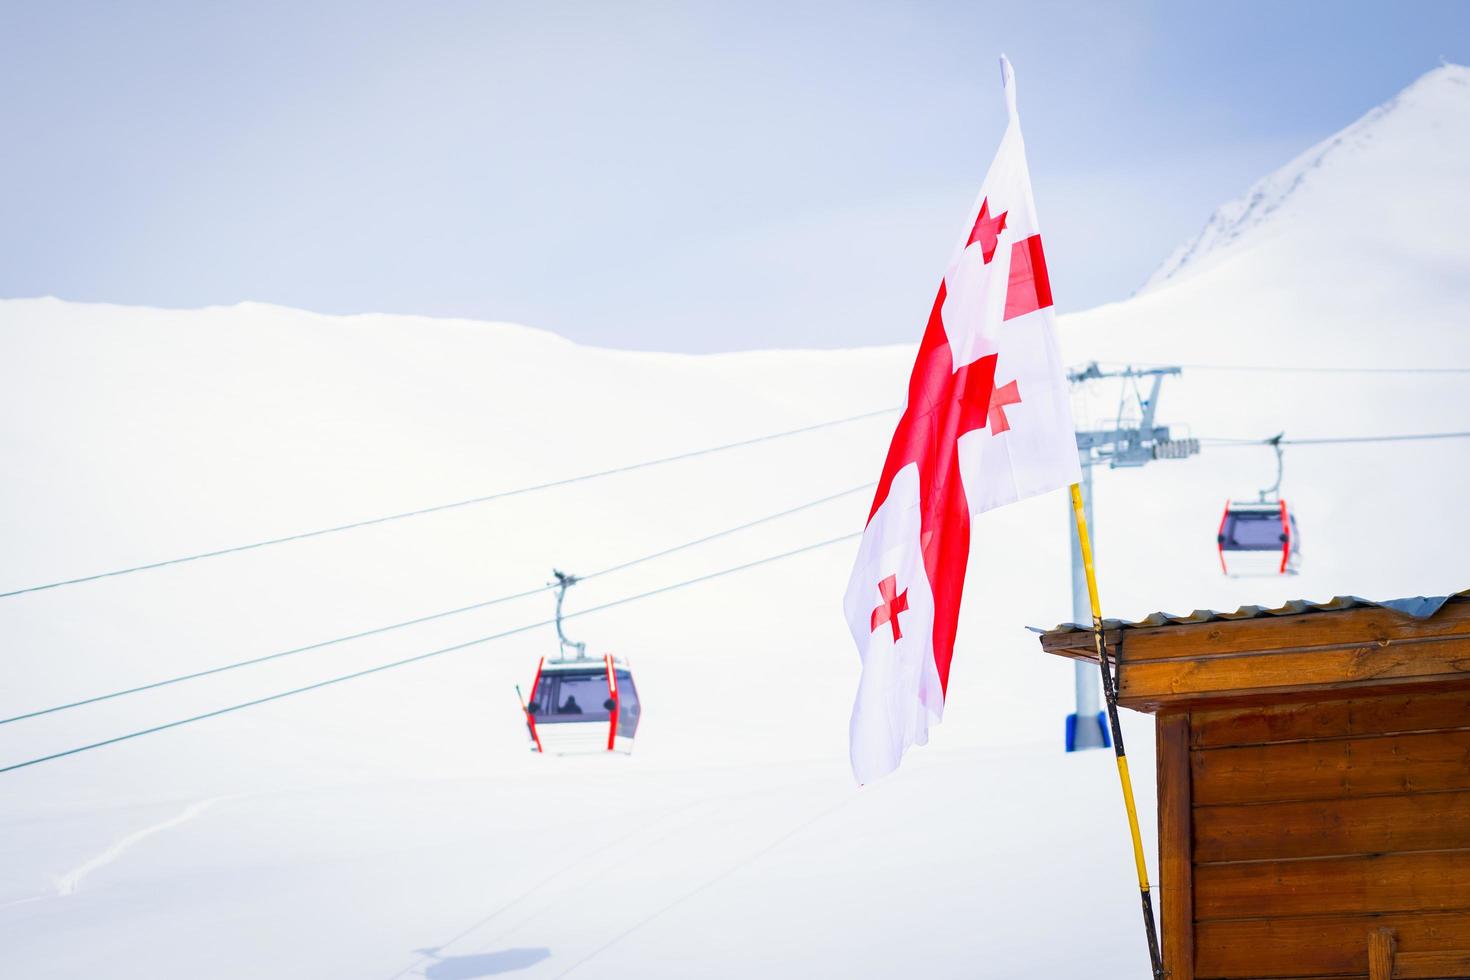 gudauri, georgia 2020 - drapeau géorgien avec panorama de gudauri et remontées mécaniques de la cabine de ski photo